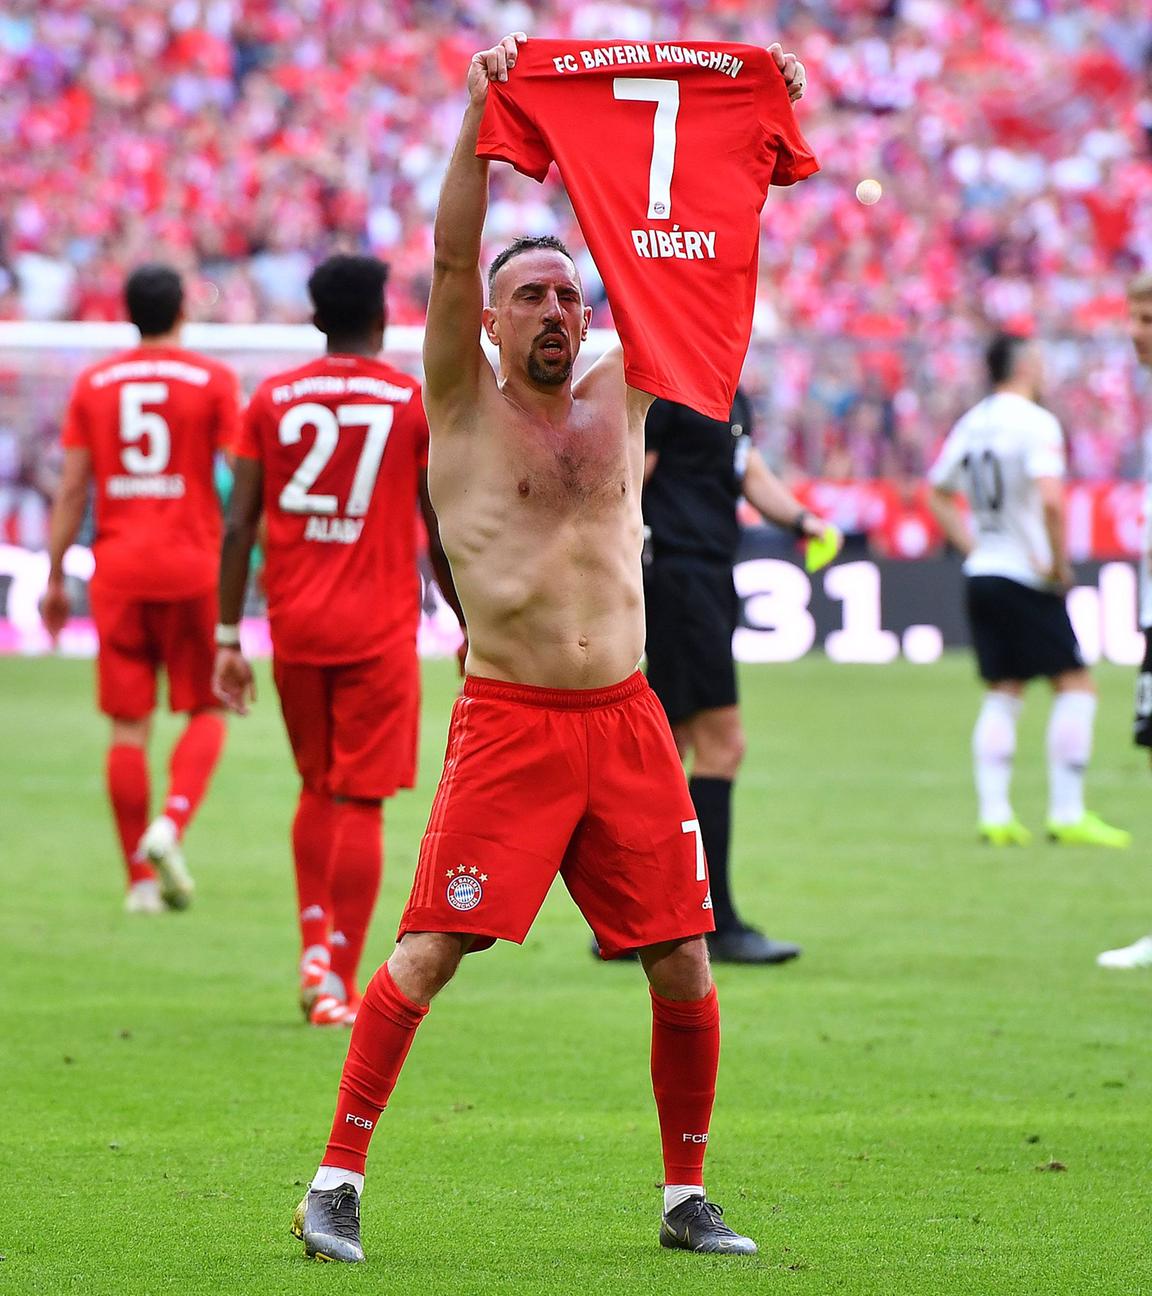 Ribéry feiert sein letztes Tor für den FC Bayern München.